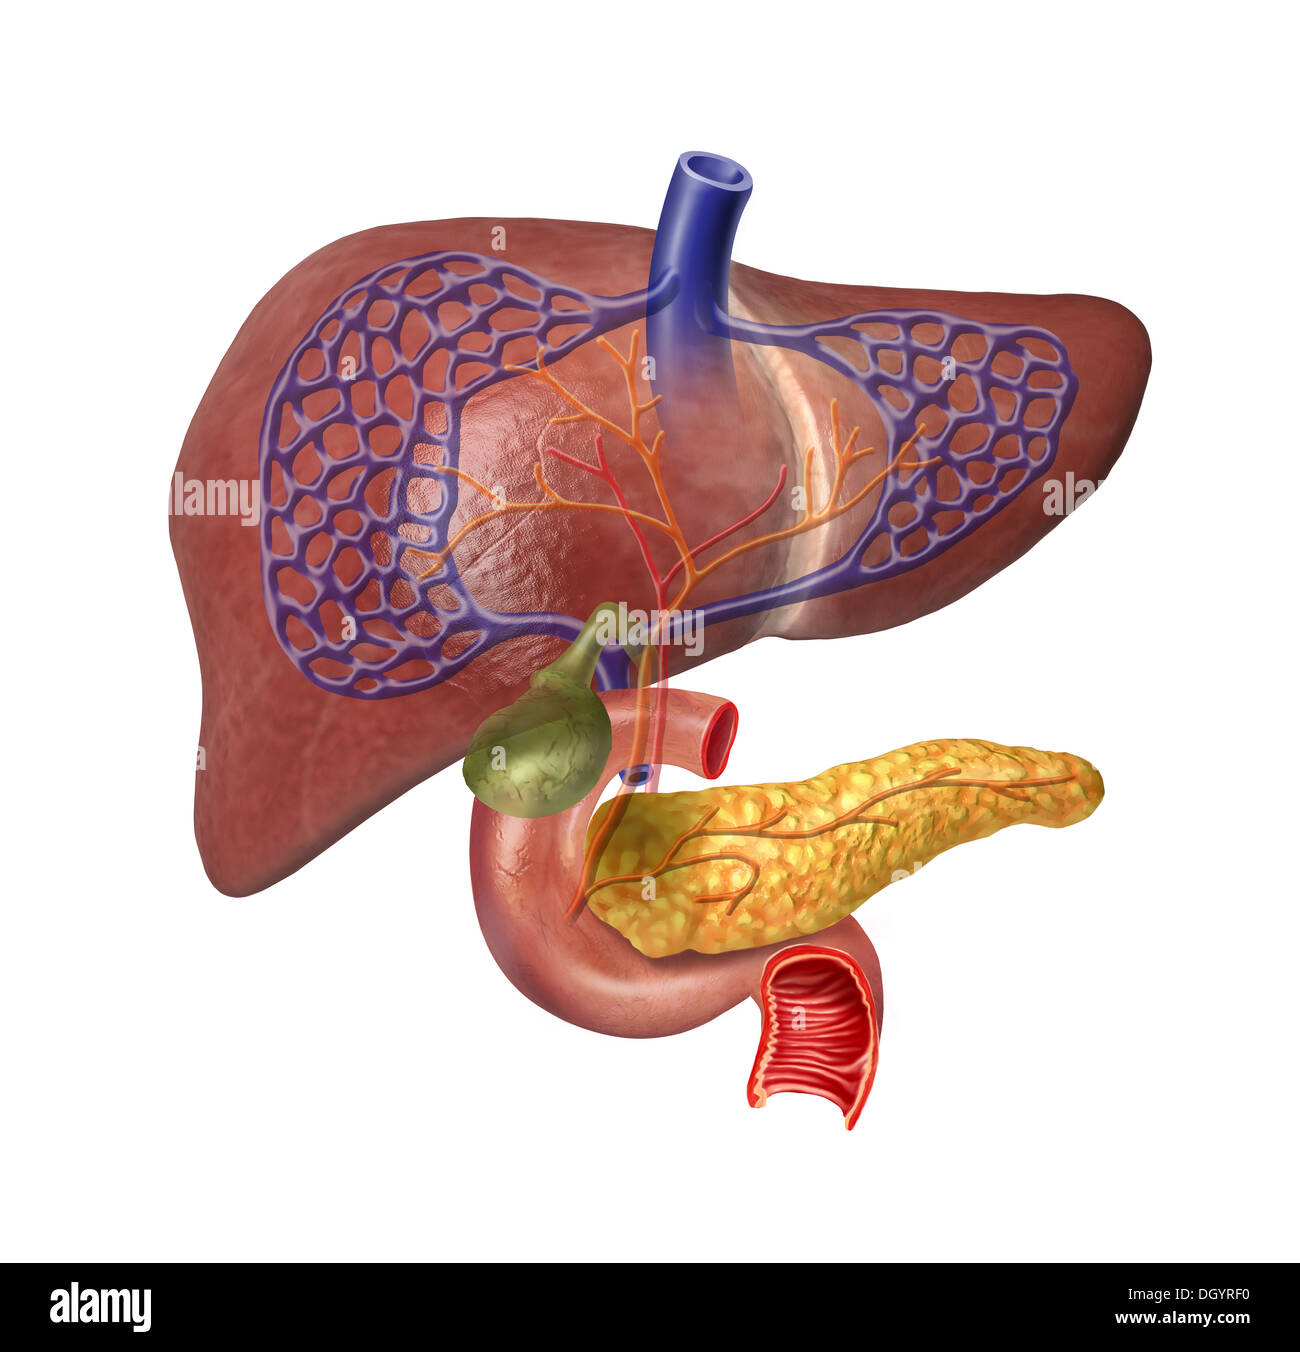 Fegato umano in sezione del sistema con il pancreas, duodeno, cistifellea, nelle vene e nelle arterie. Immagine di anatomia. Foto Stock